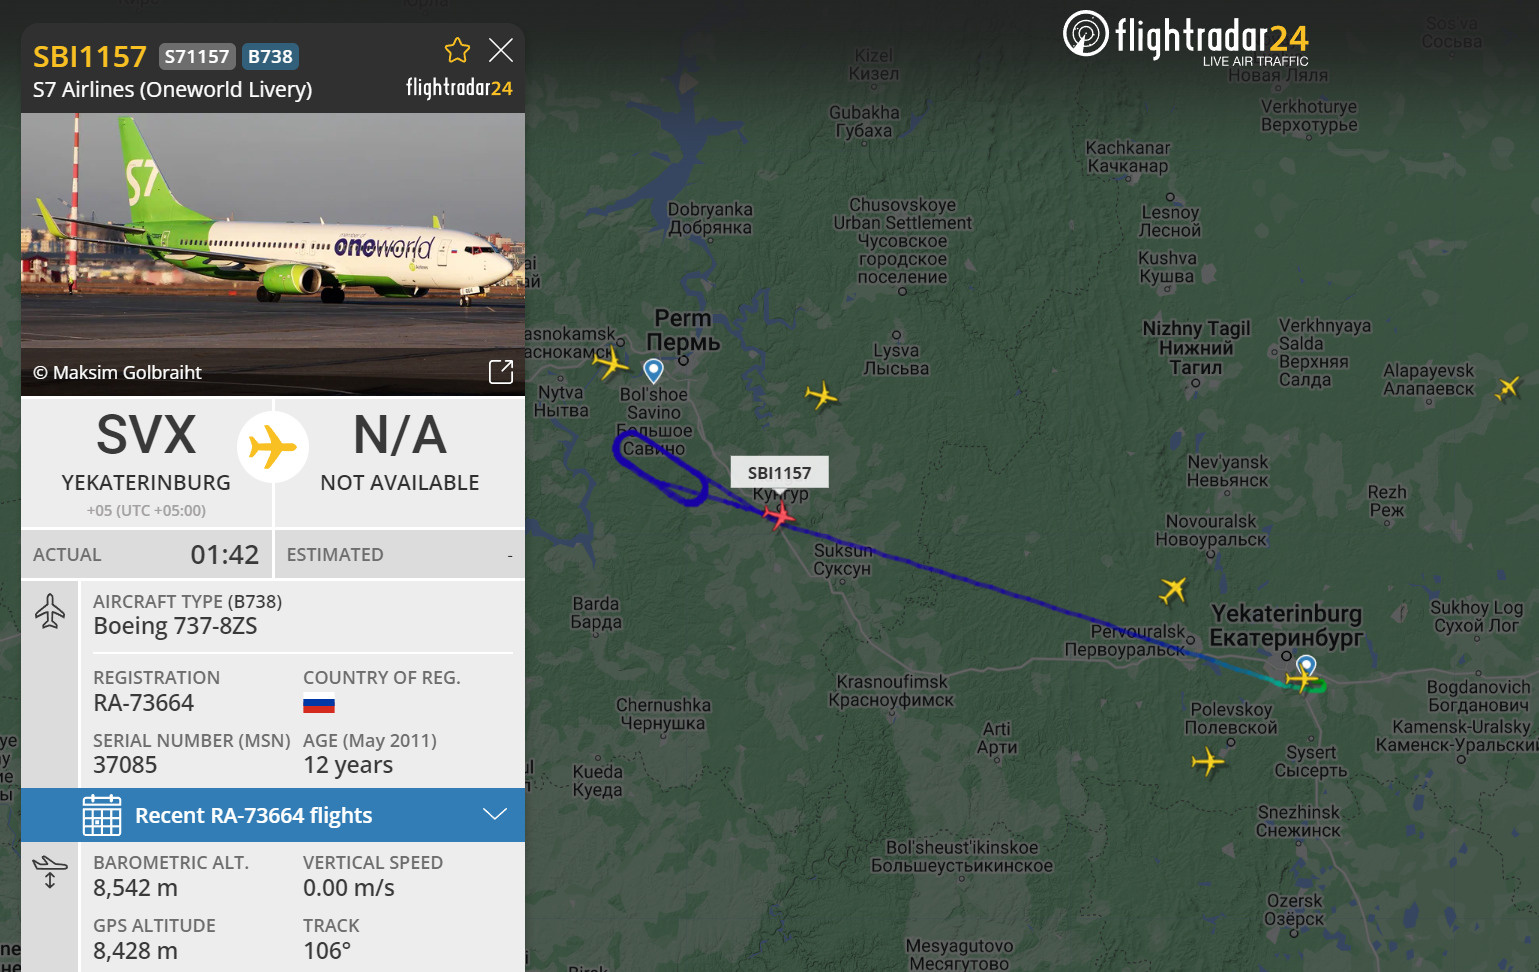 Самолет кружил в зоне ожидания почти полчаса, после чего взял обратный курс на Екатеринбург